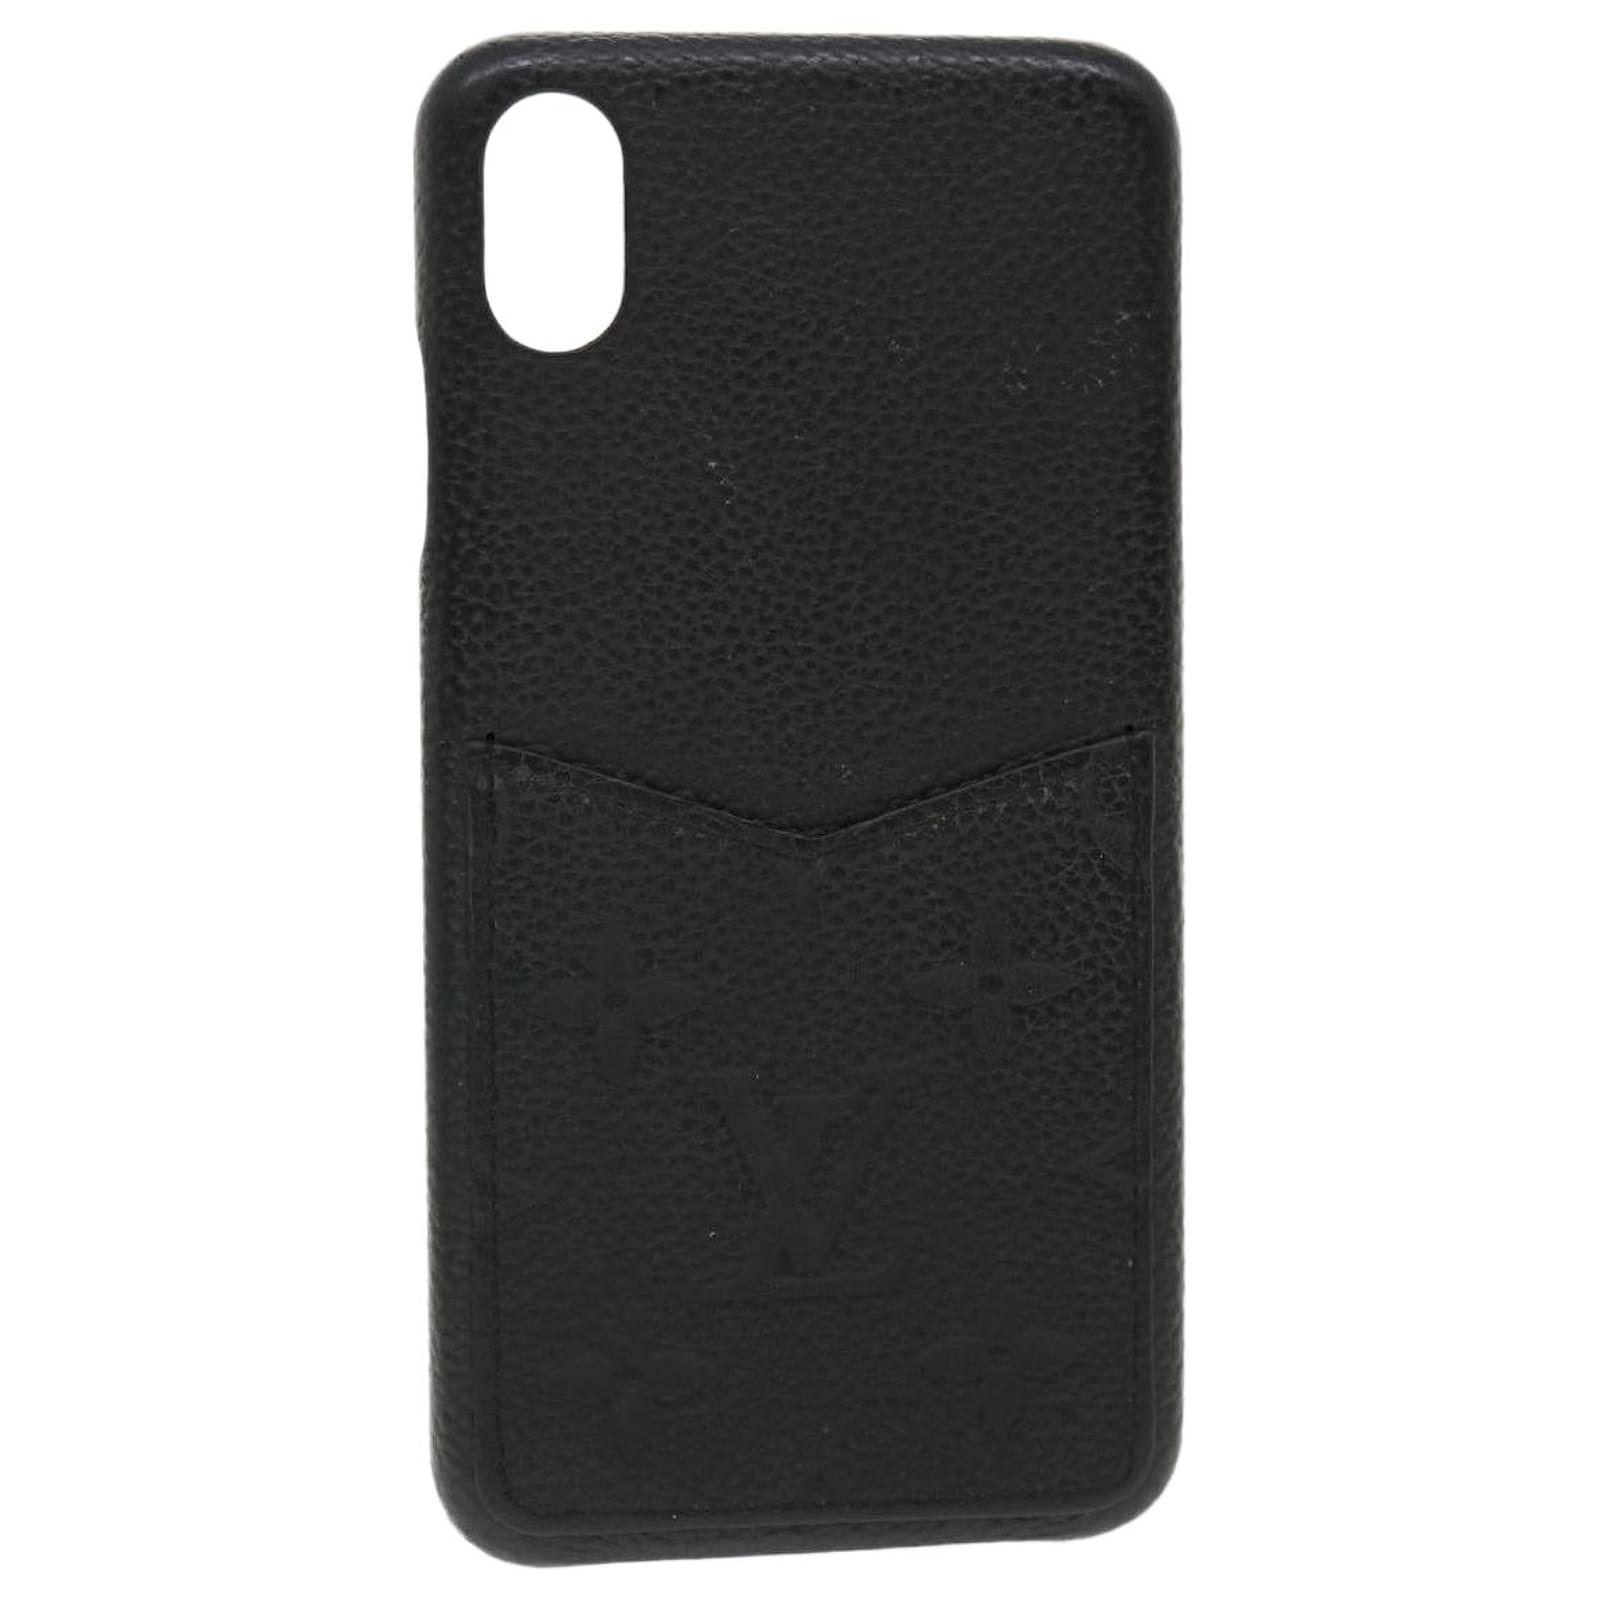 Louis Vuitton Epi Epi Leather Phone Flip Case For IPhone X Fuchsia